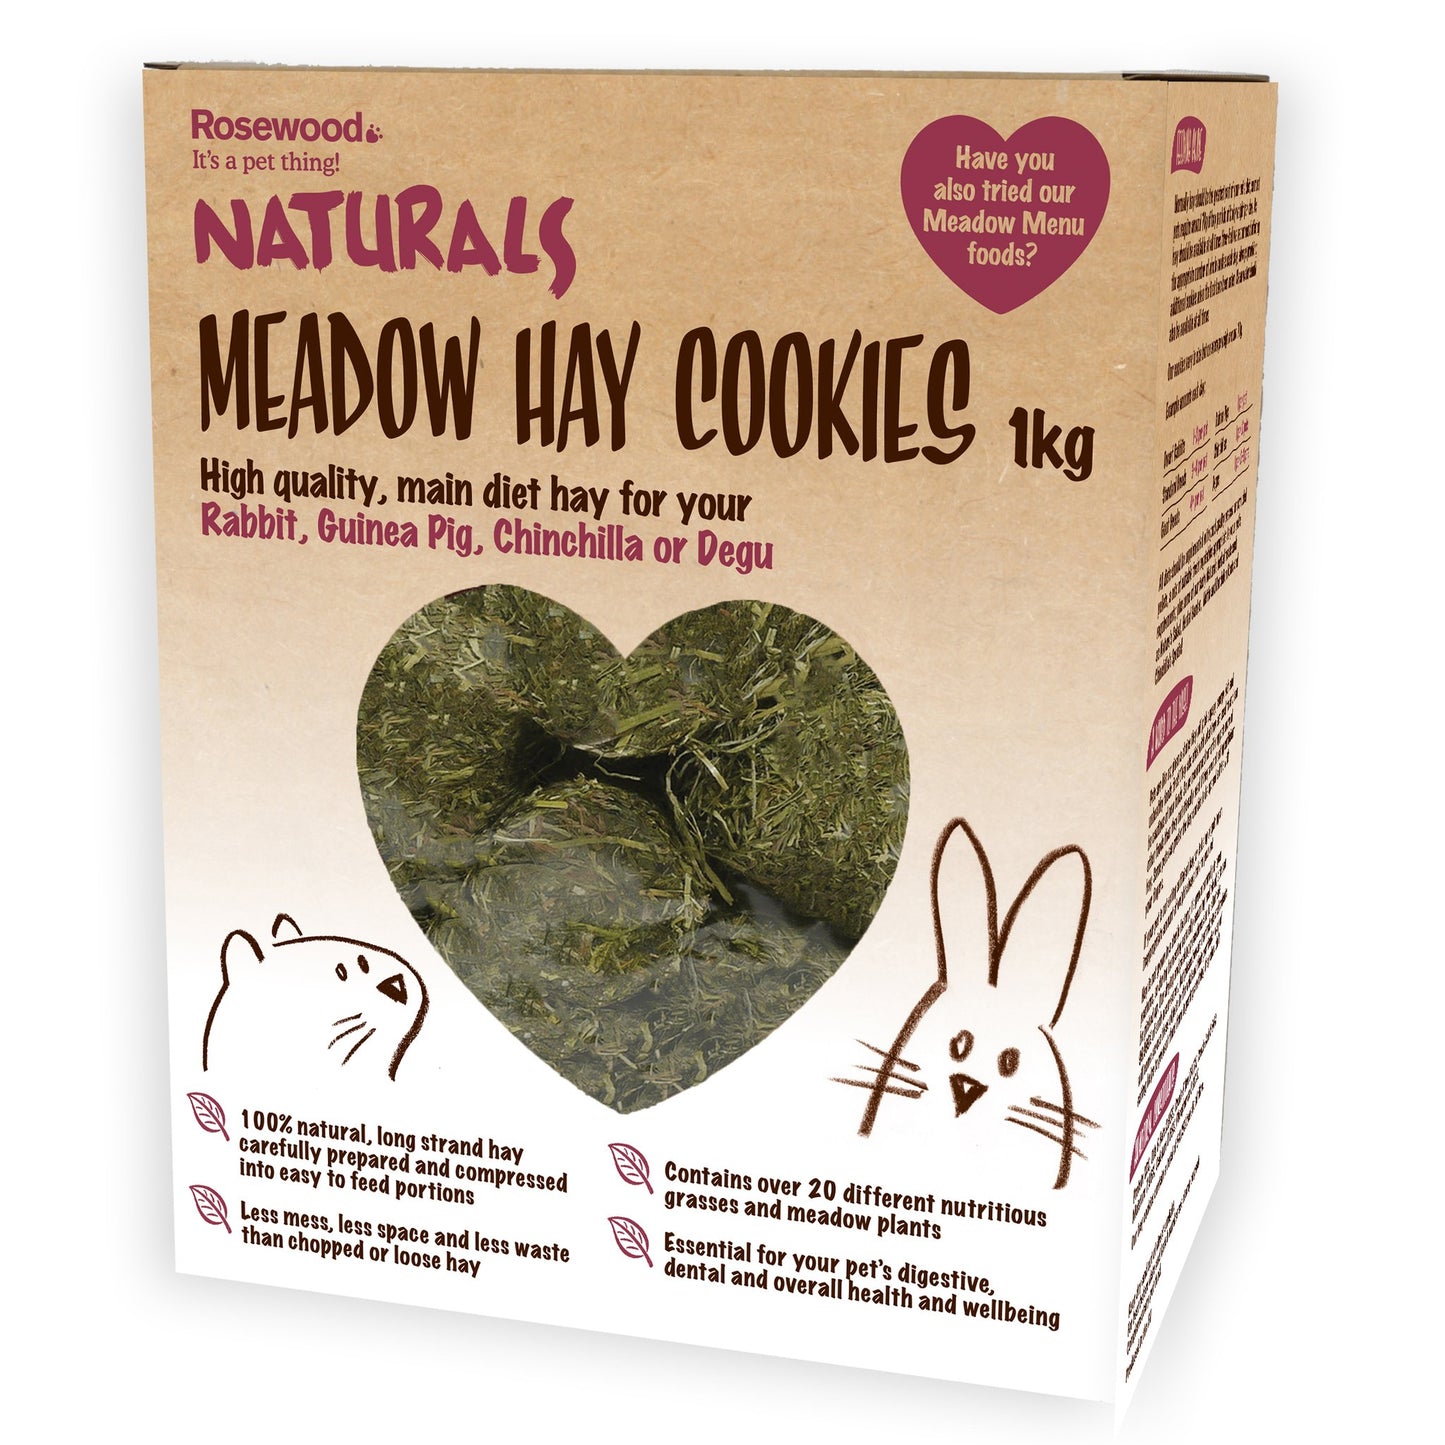 Rosewood Naturals Meadow Hay Cookies 1kg - Mischief Pet Products